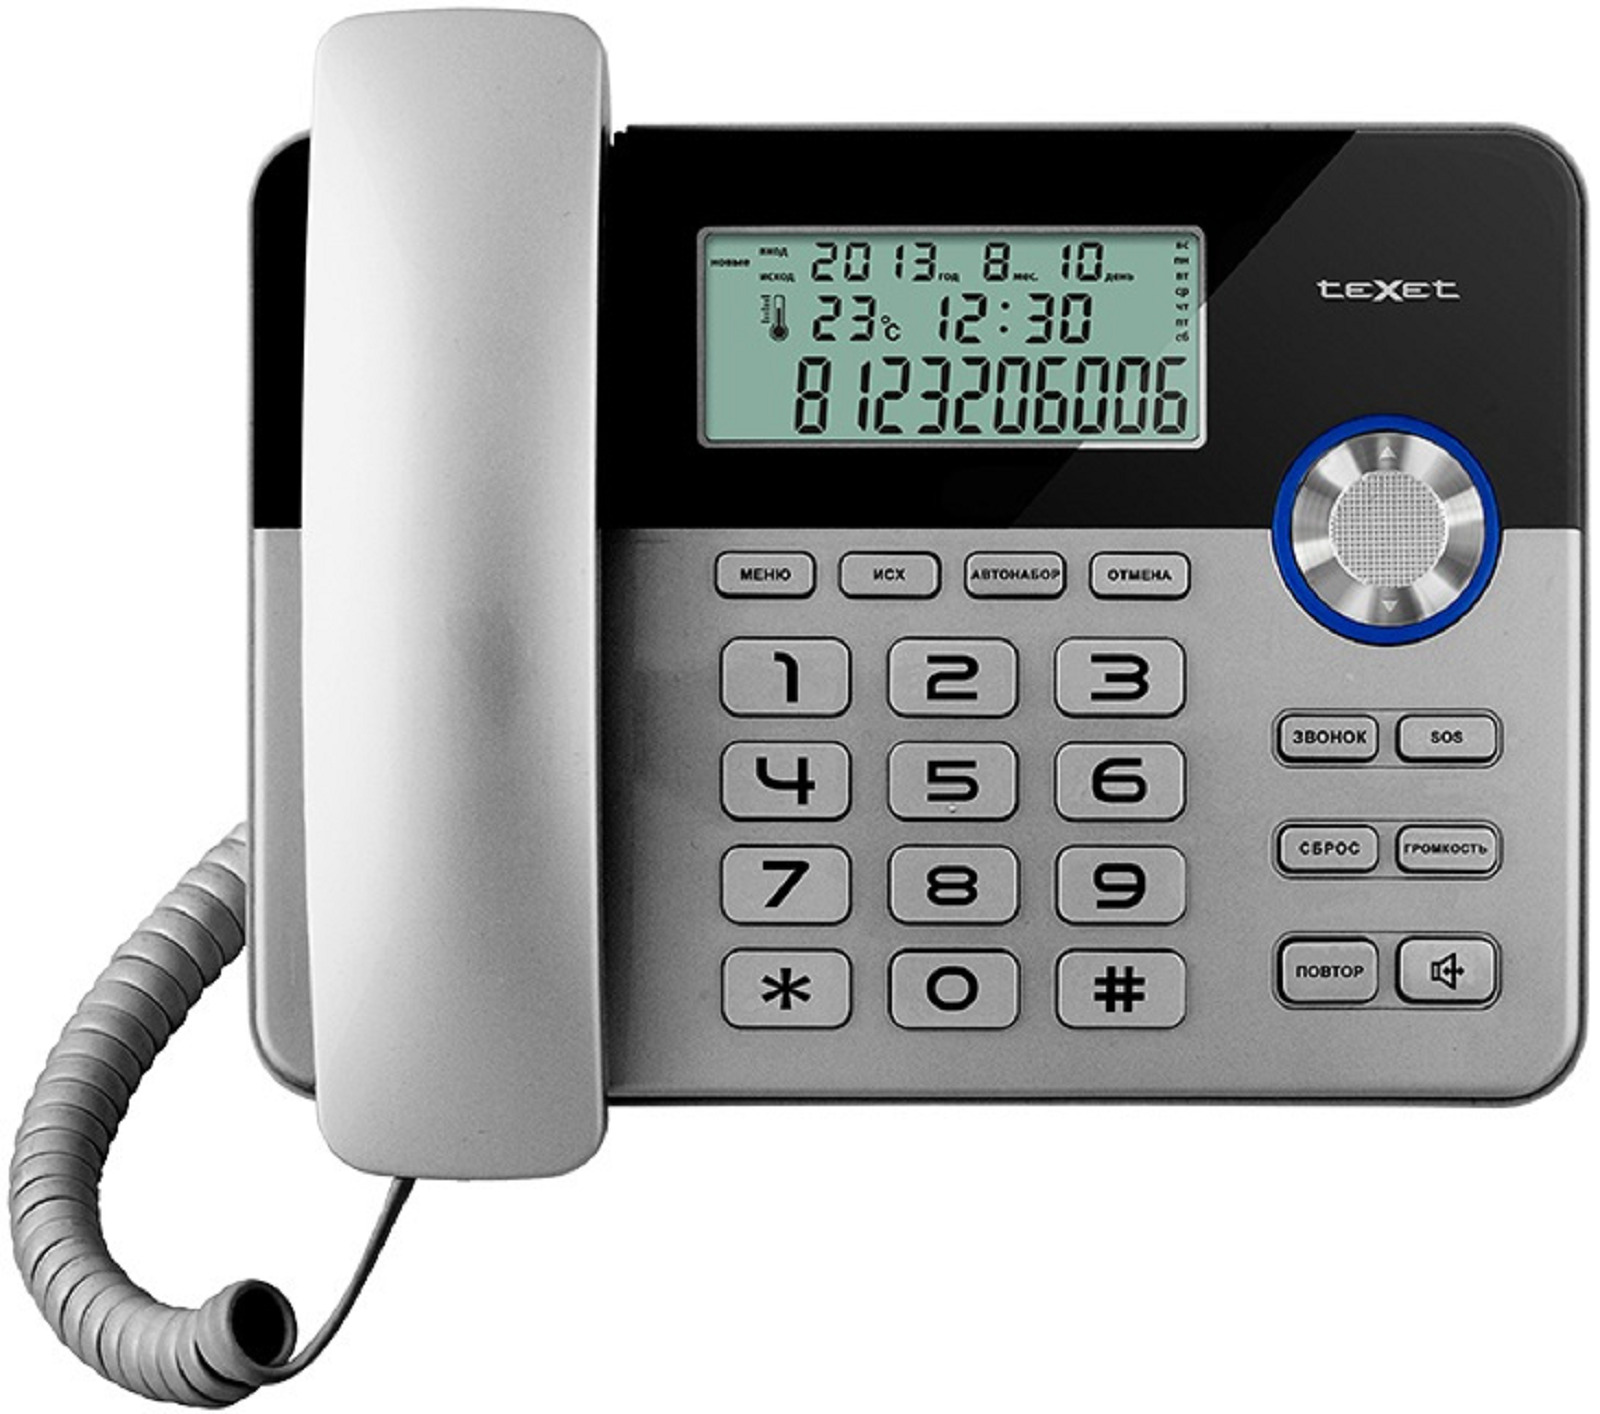 Телефоны стационарные радио. TEXET TX-259. Телефон проводной TEXET TX-259. Телефонный аппарат TEXET ТХ-259 (черный-серебристый). TEXET ТХ-259.